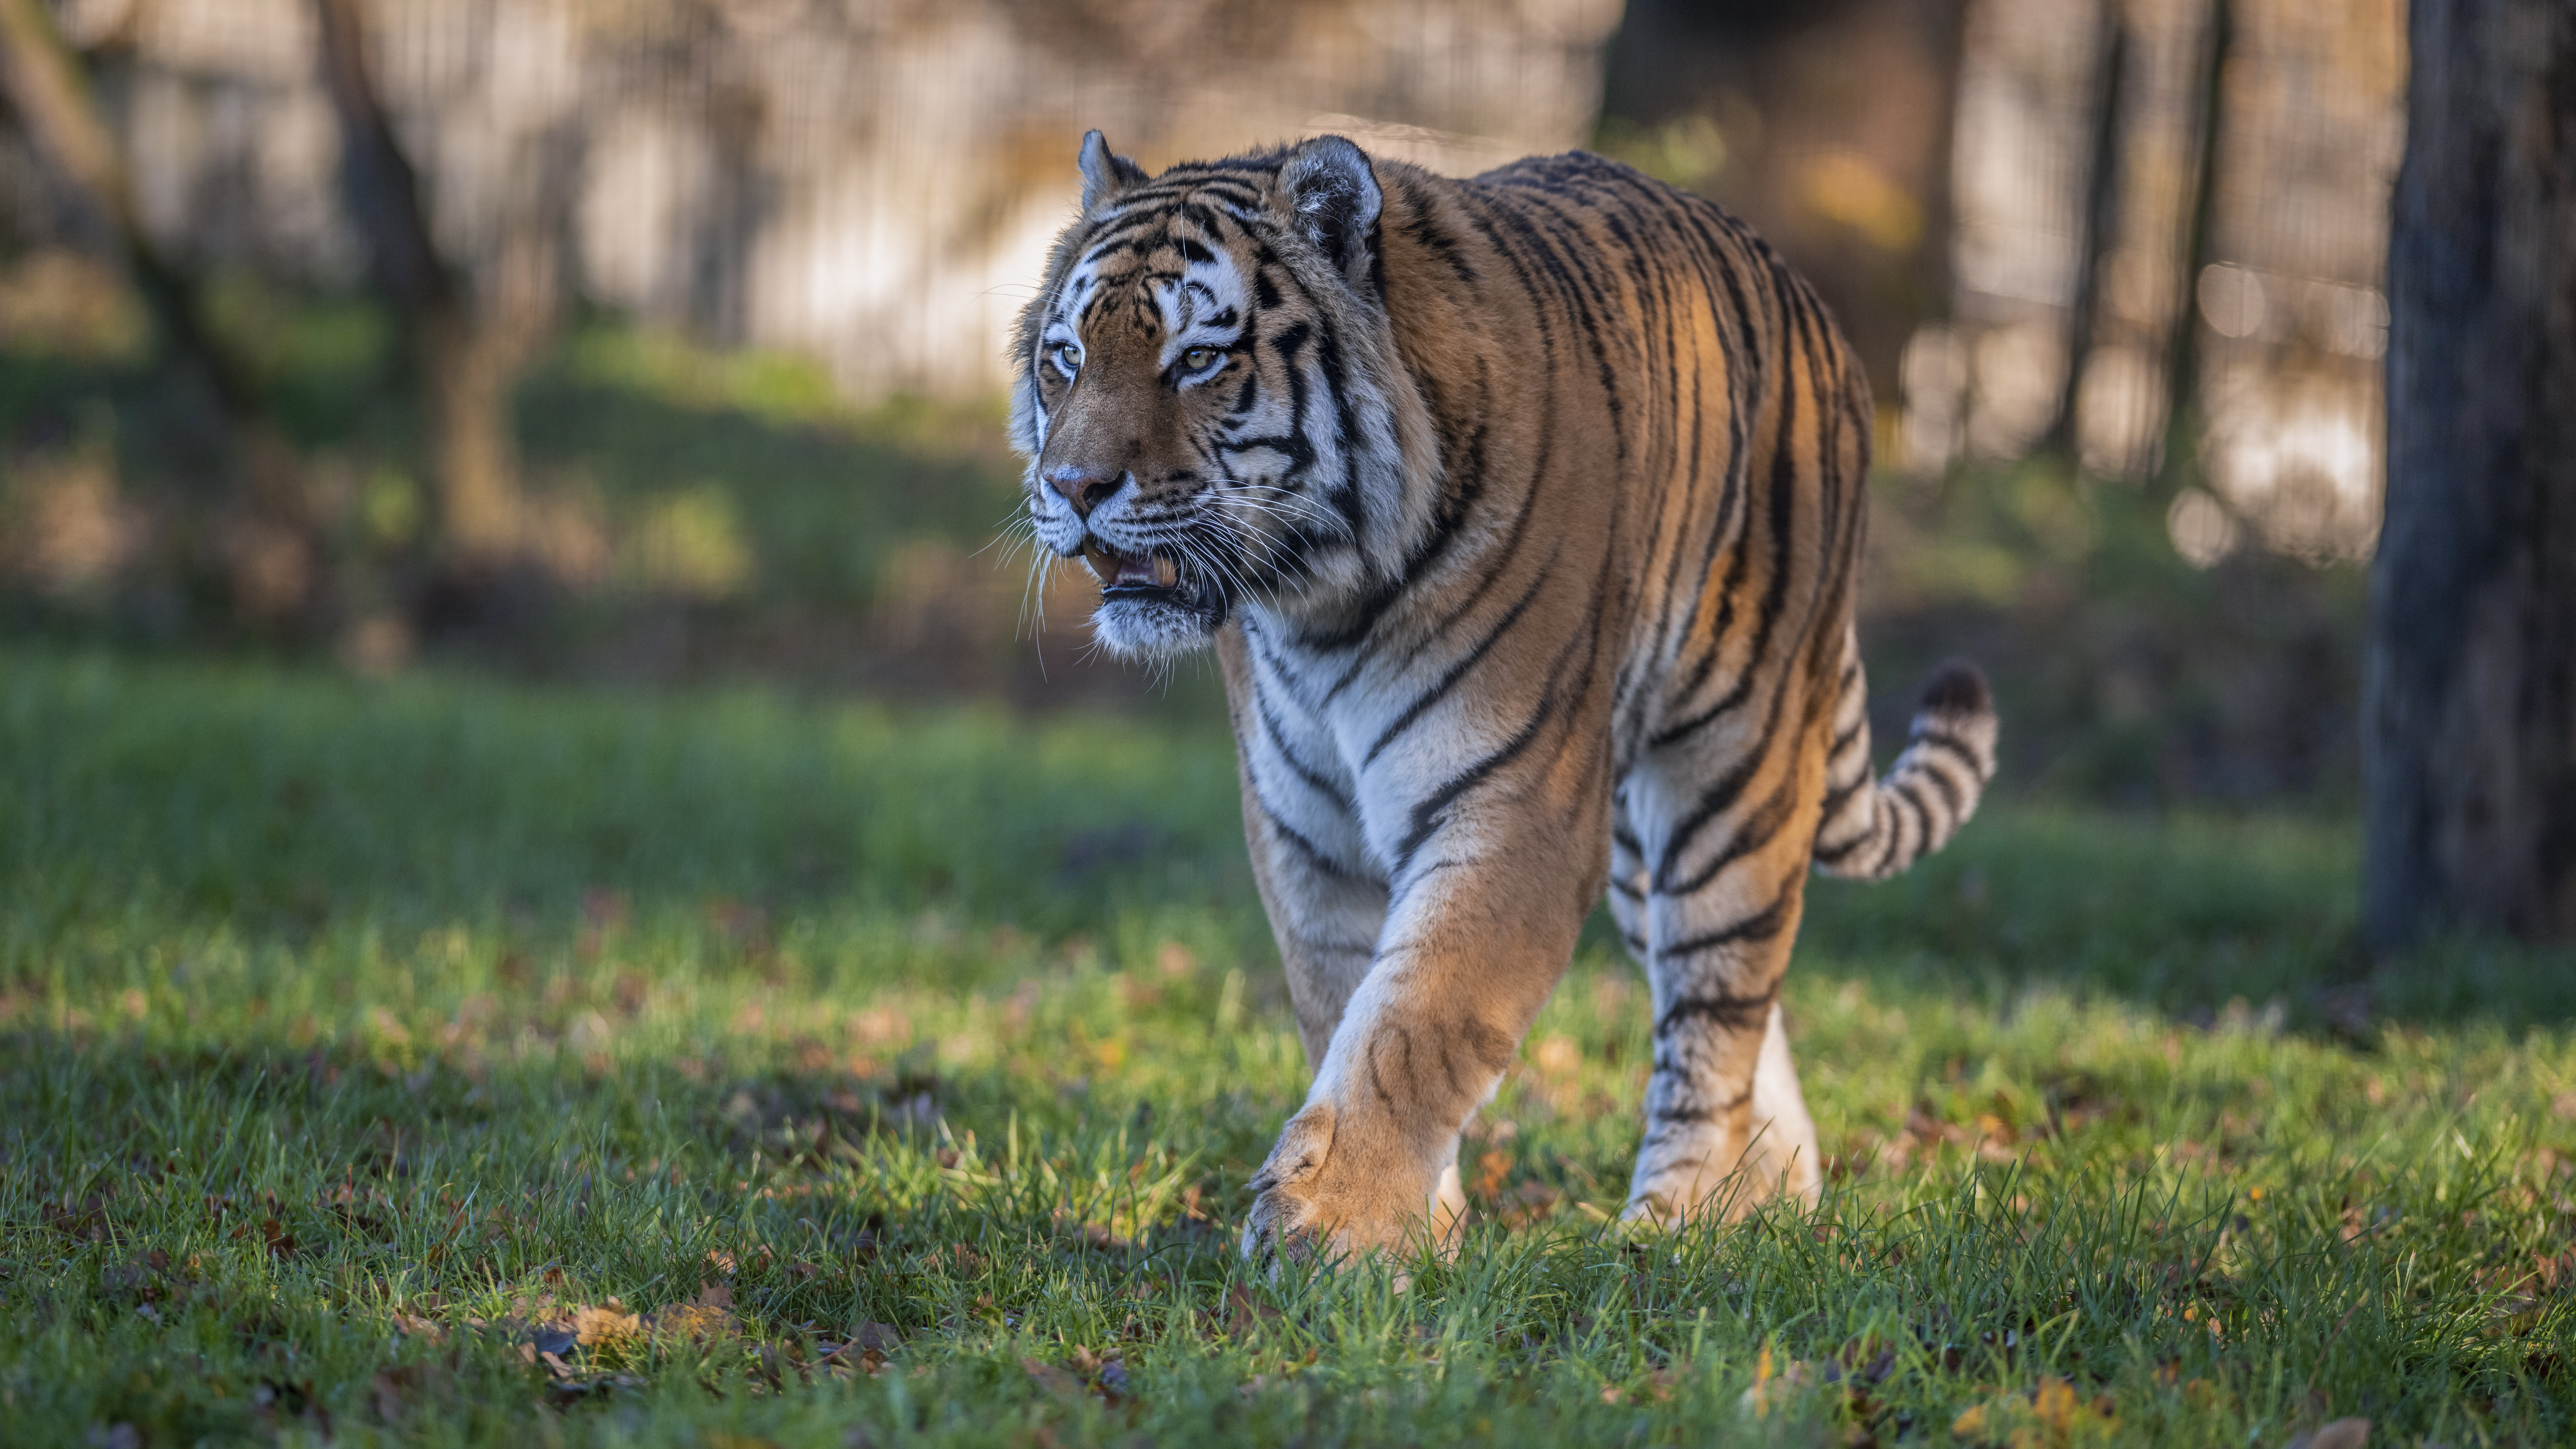 Скачать фотографию амурский тигр, животное · бесплатная фотография